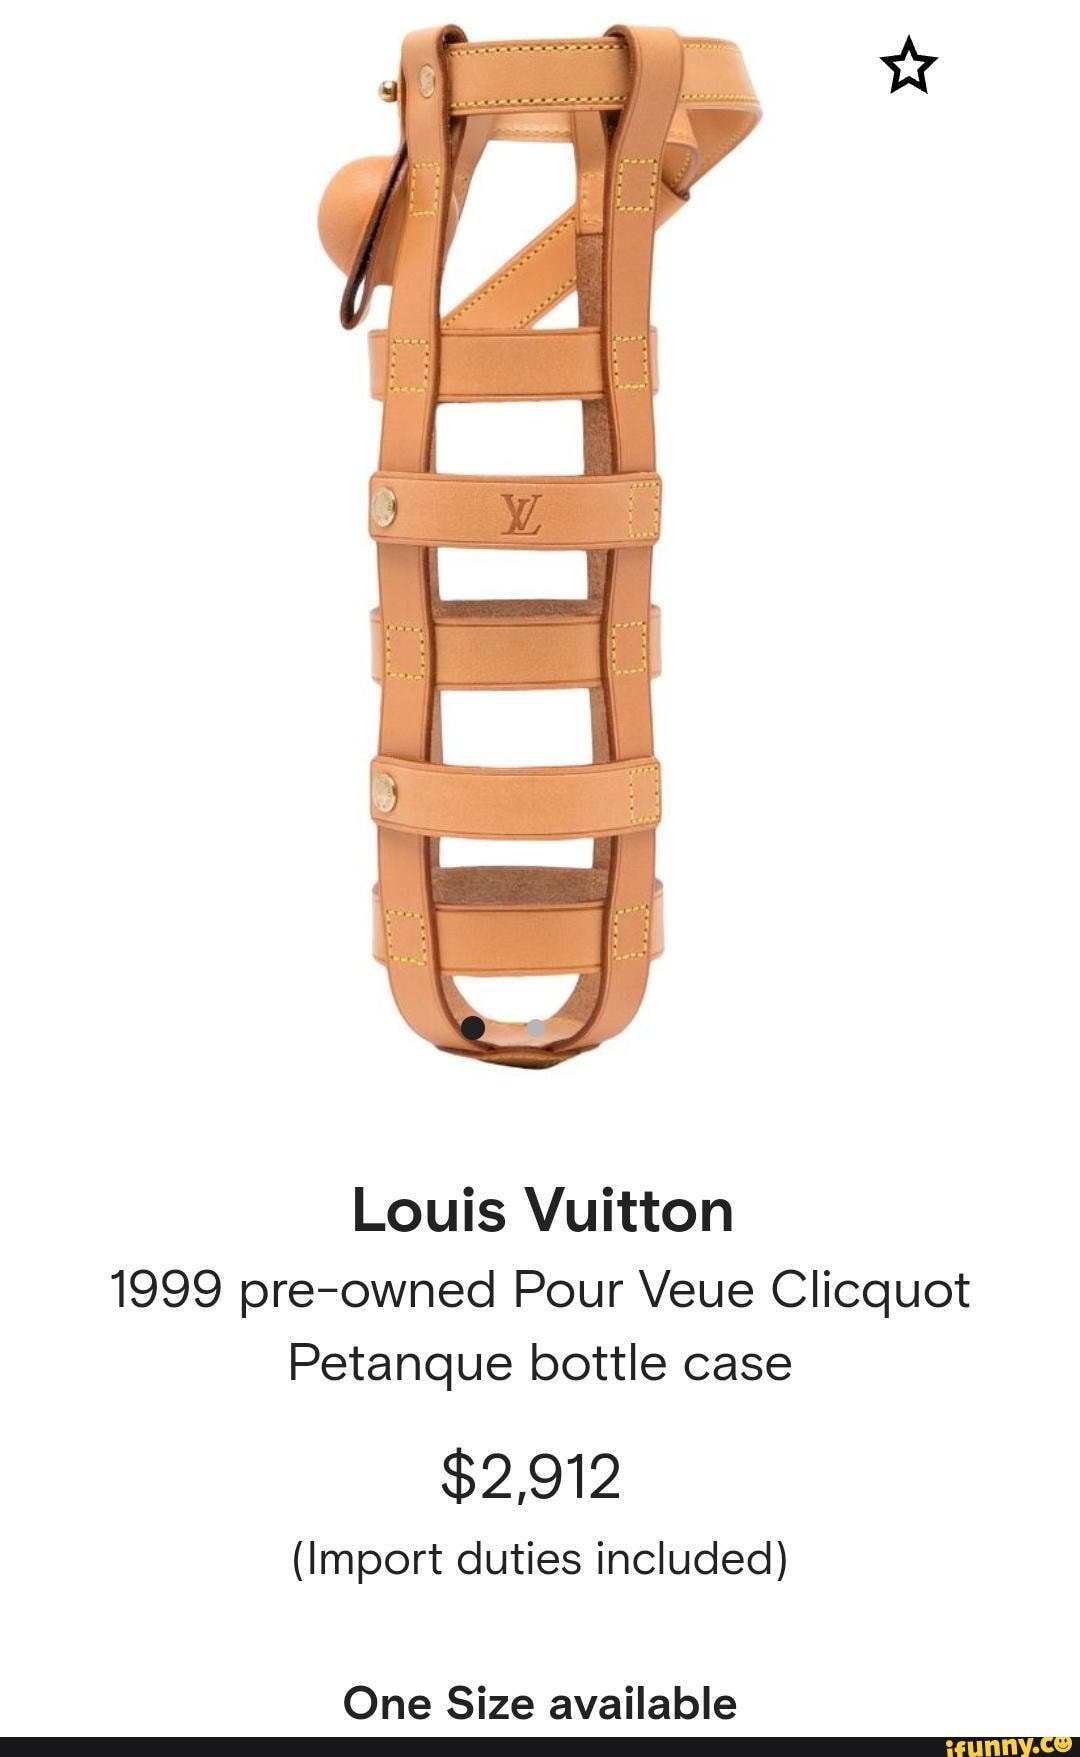 Louis Vuitton 1999 pre-owned Pour Veuve Clicquot Petanque Case